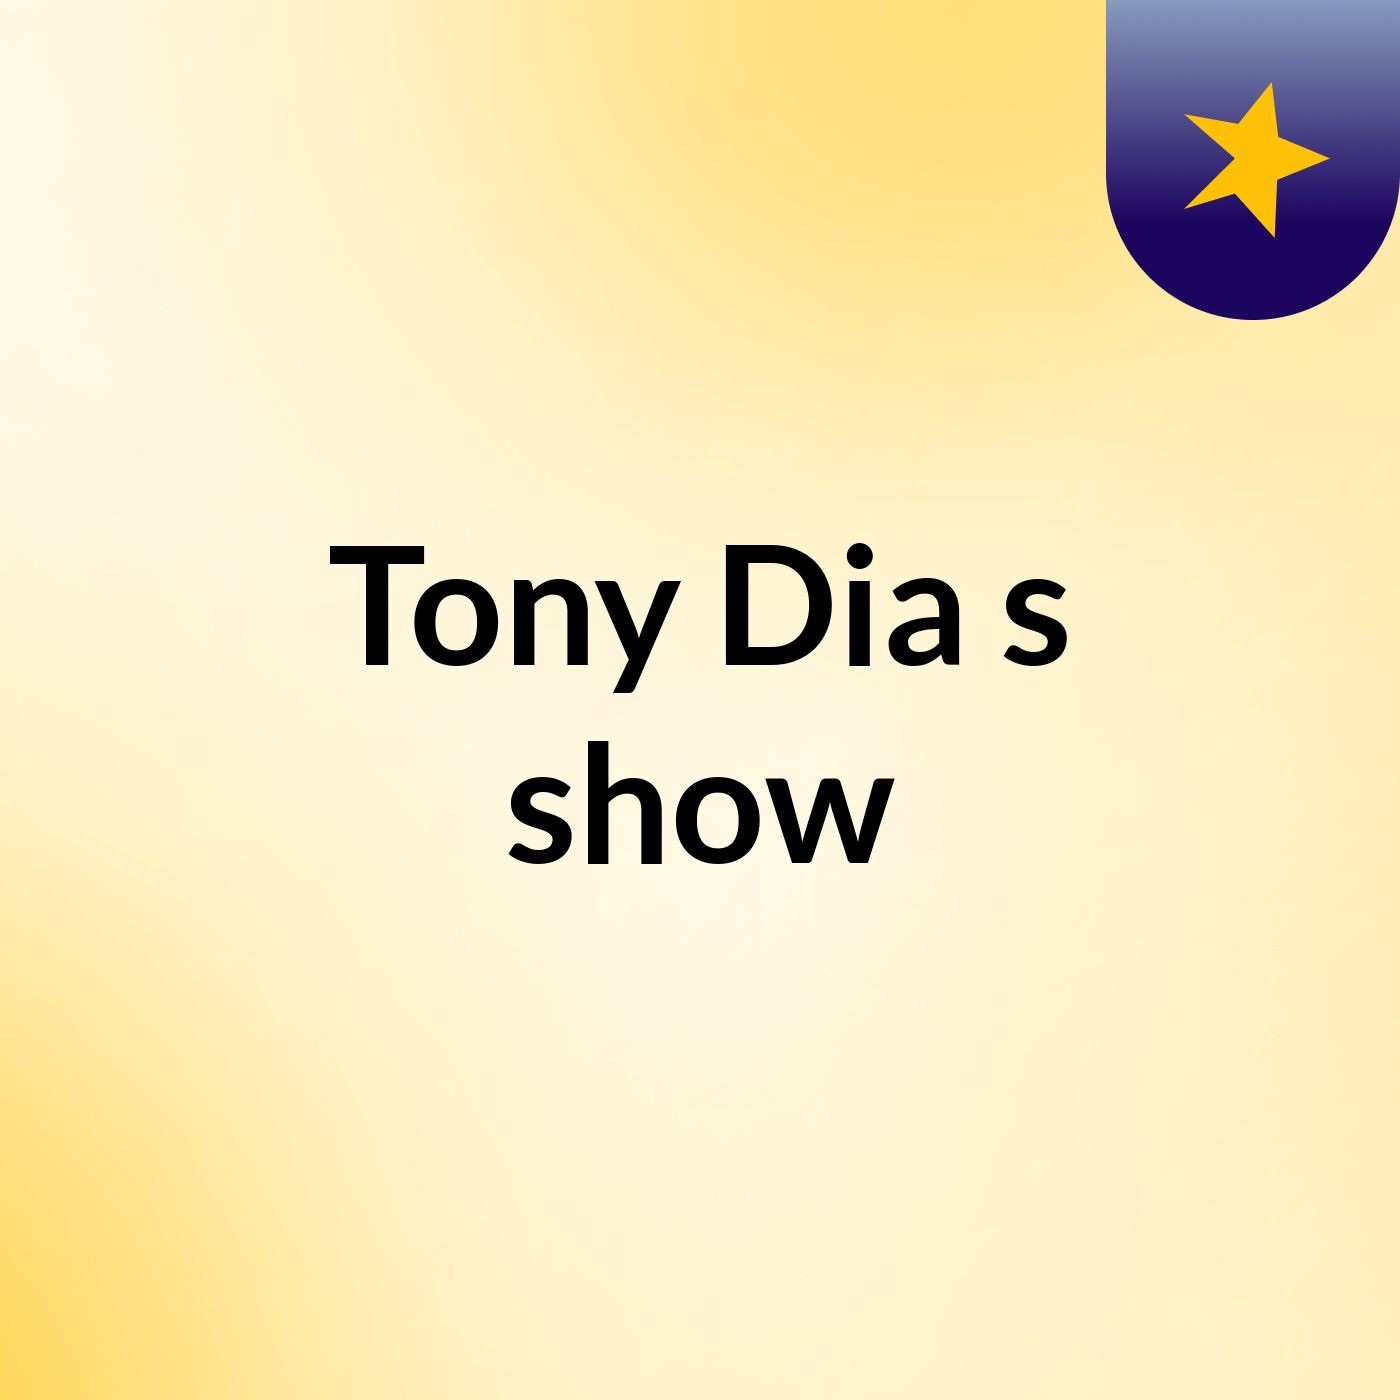 Tony Dia's show